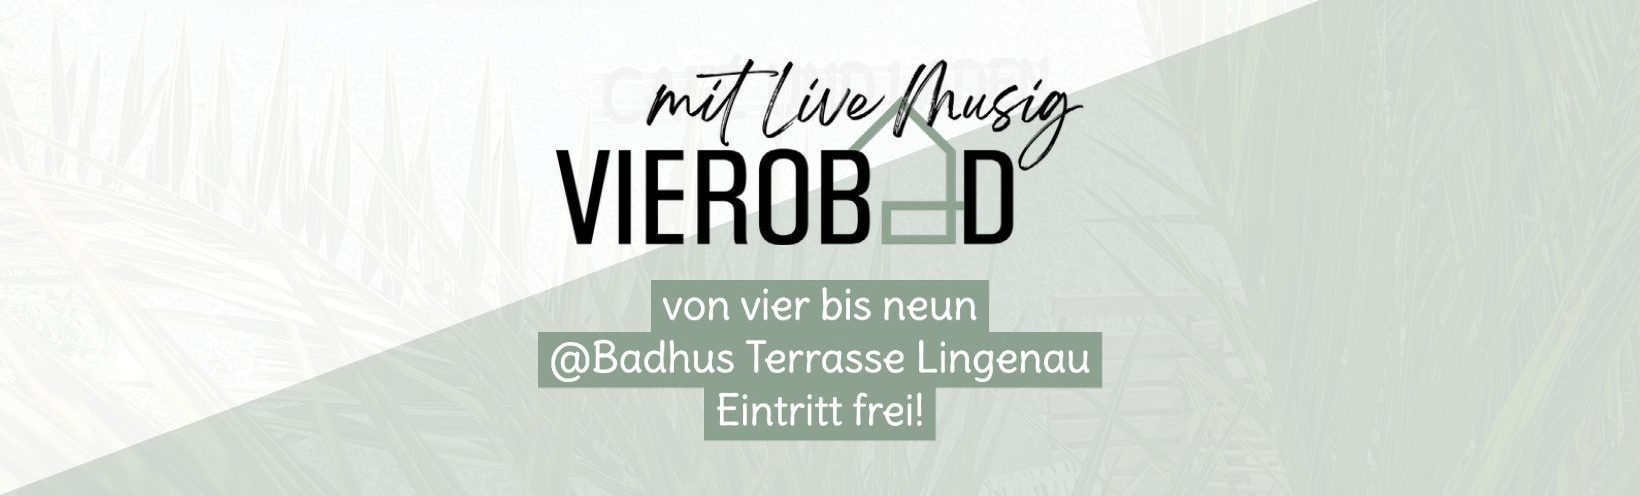 Badhus-Vierobad mit Live-Musik